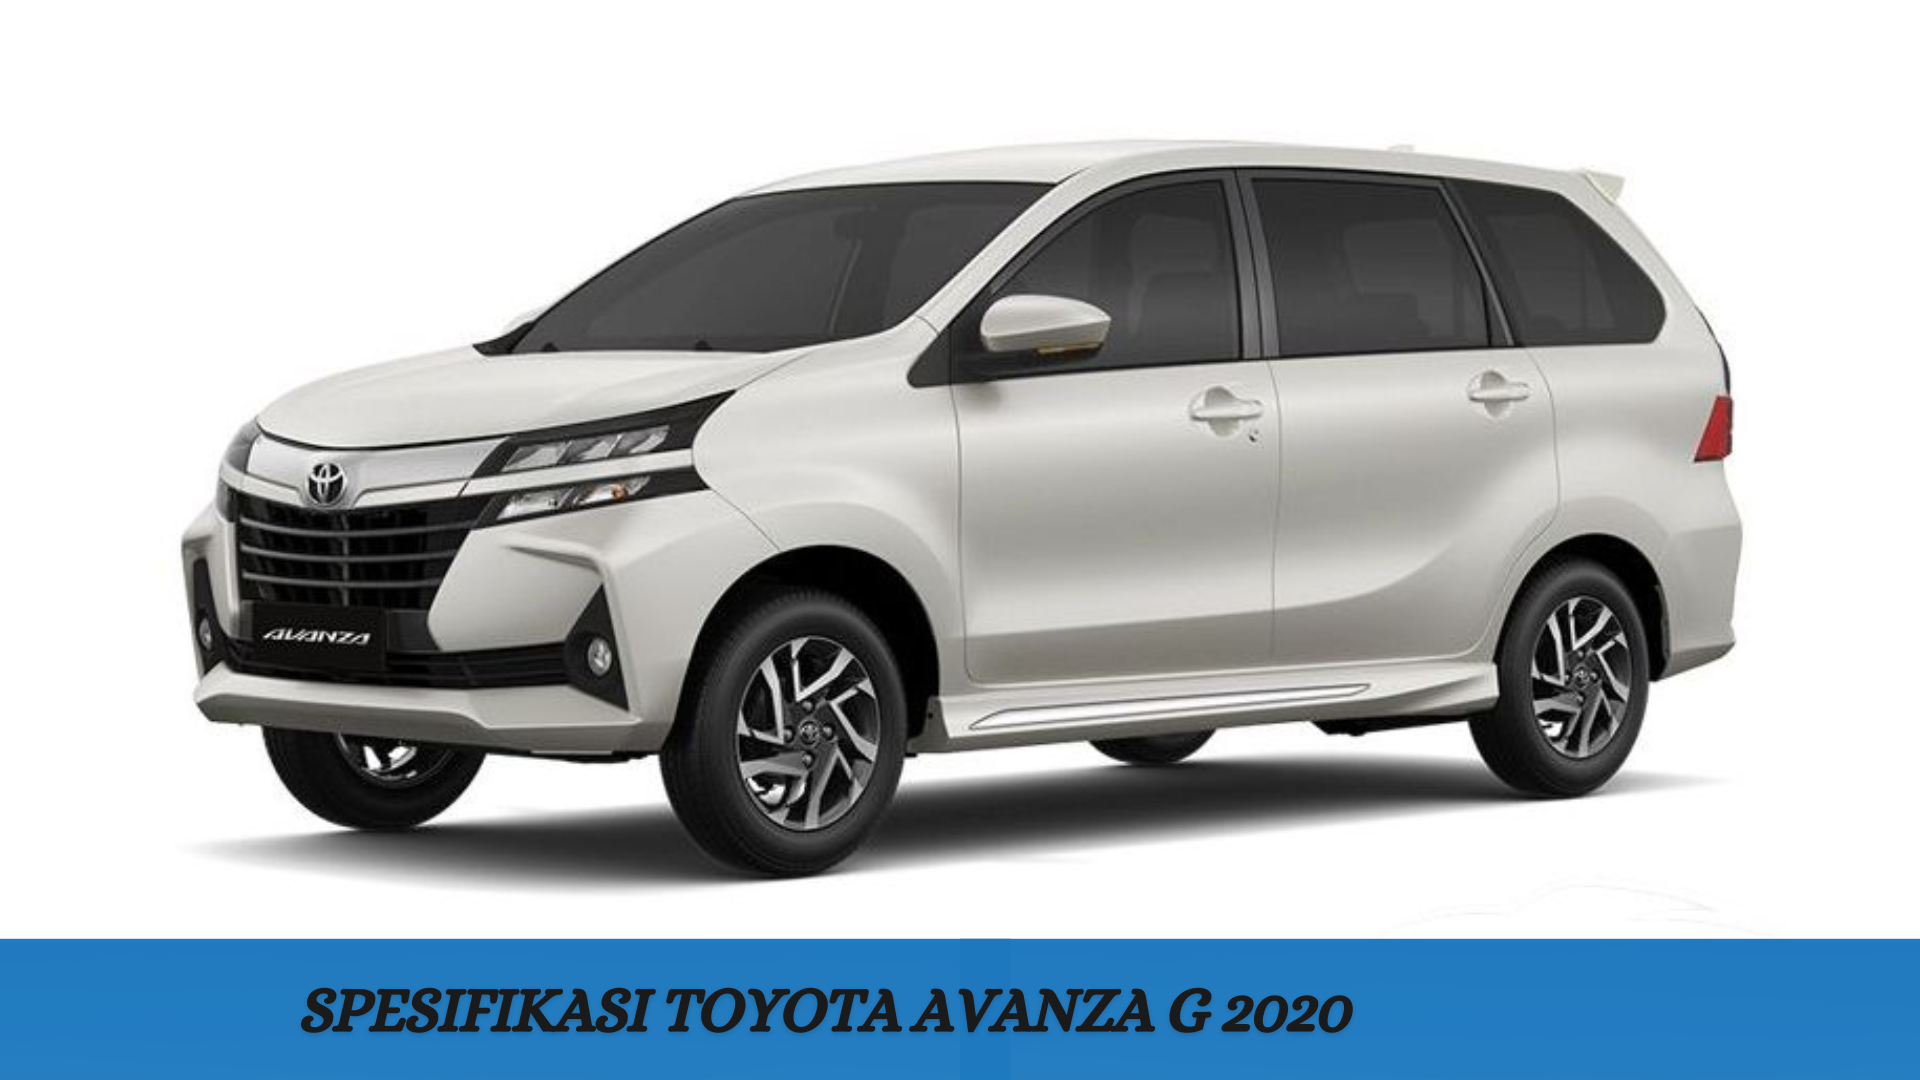 Spesifikasi Toyota Avanza G 2020, Pilihan Pas untuk Berkendara Bersama Keluarga